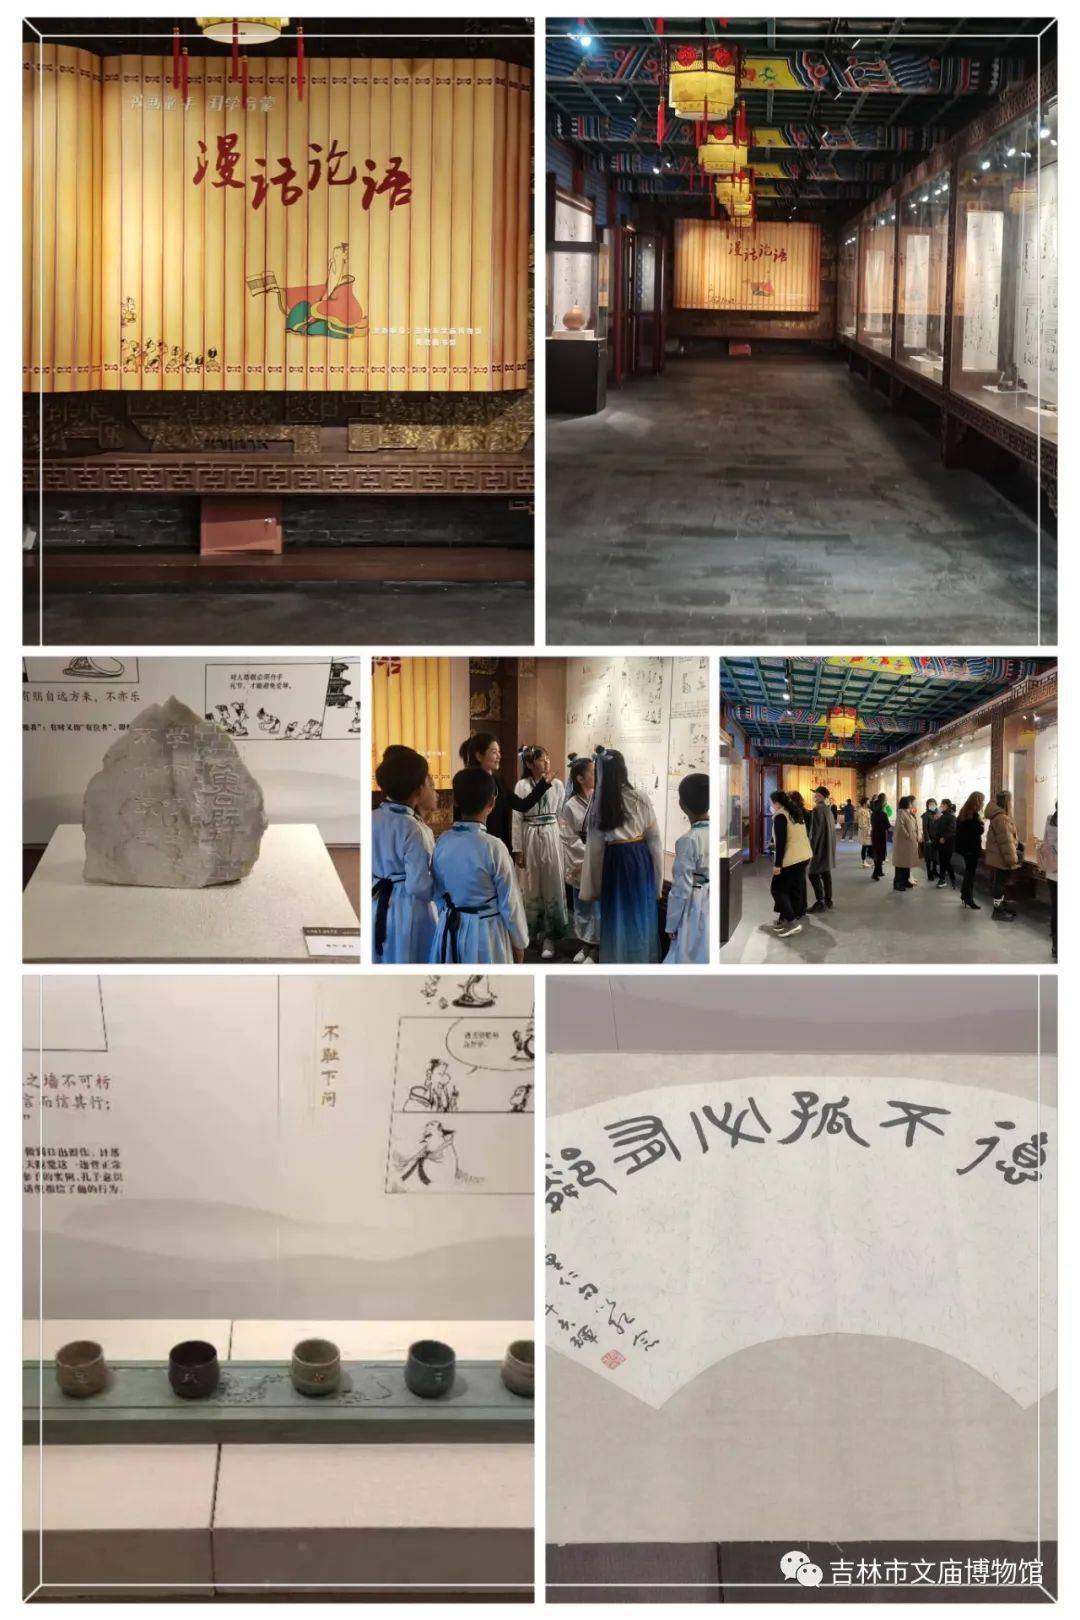 吉林市文庙博物馆征文图片